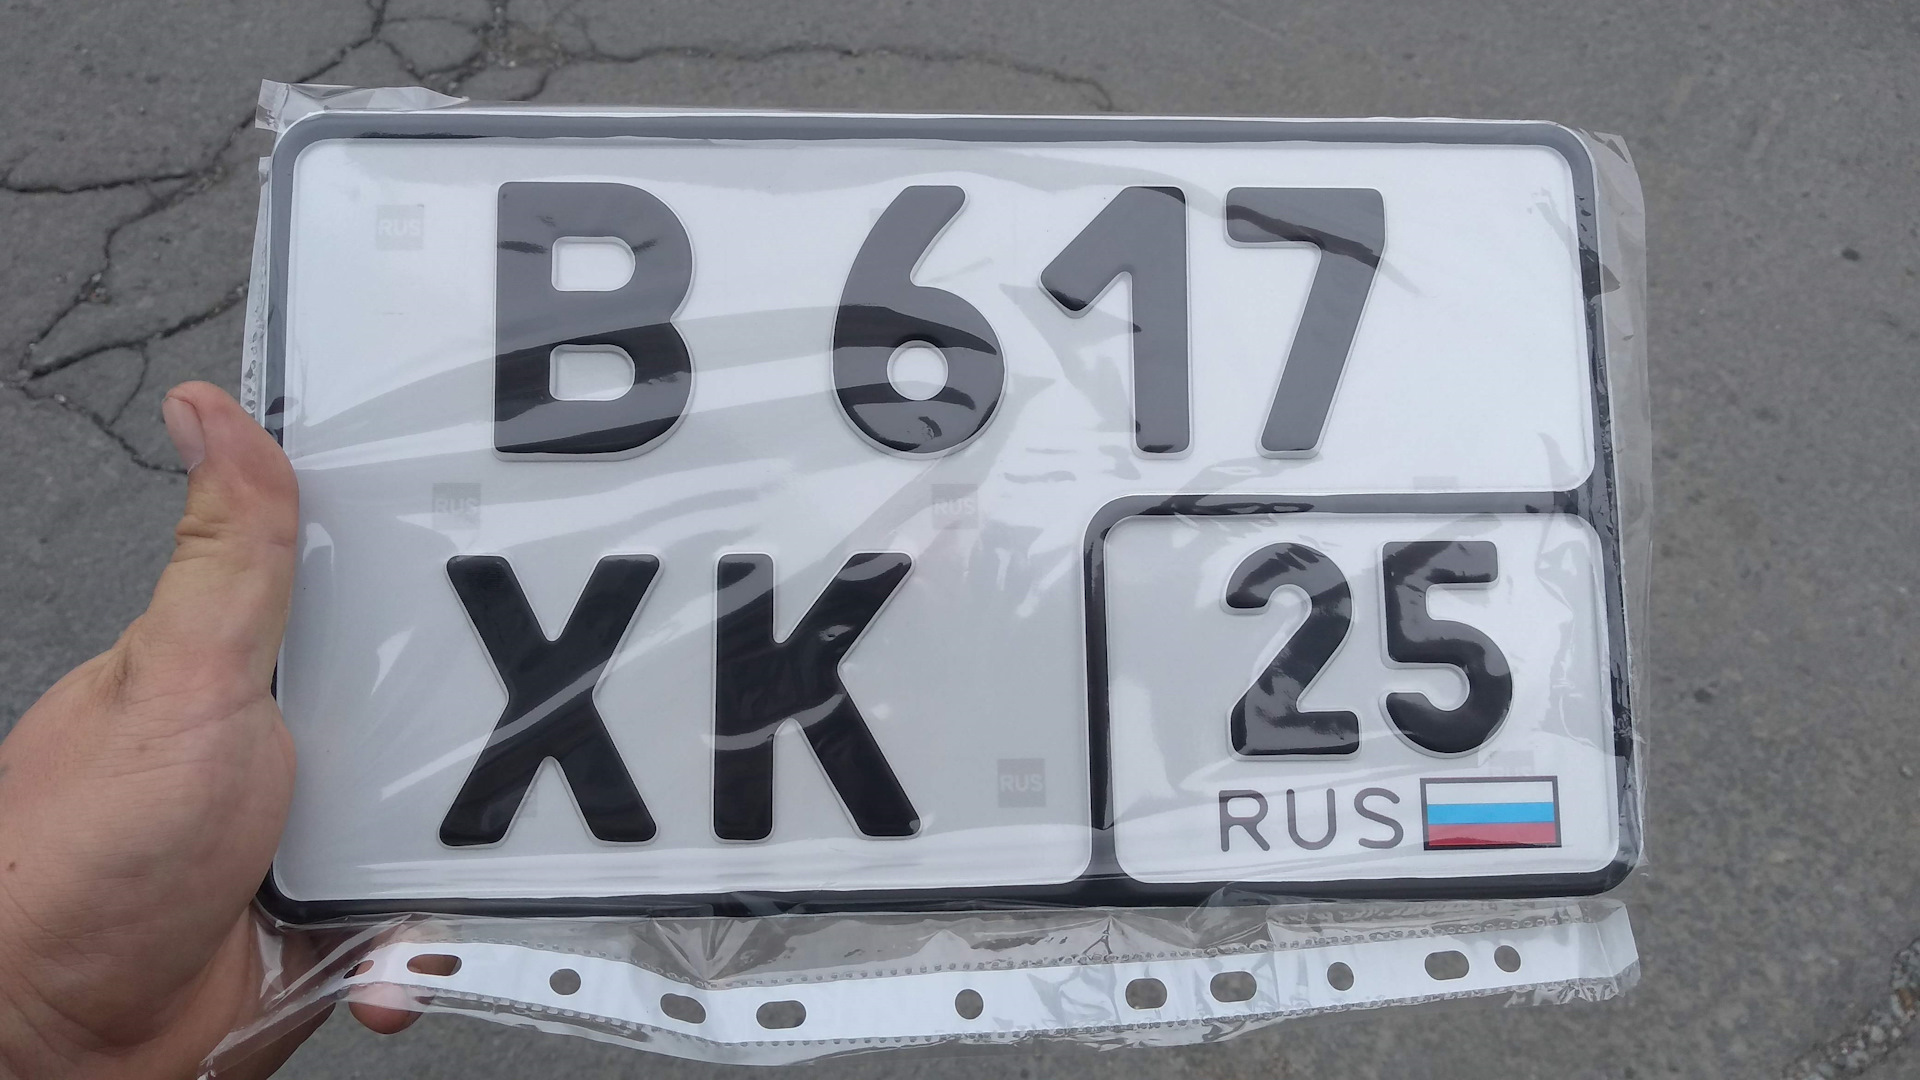 Код номера белоруссии. Квадратные номера. Белорусские квадратные номера. Белорусские номера автомобилей квадратные. Квадратные гос номера Белоруссии.